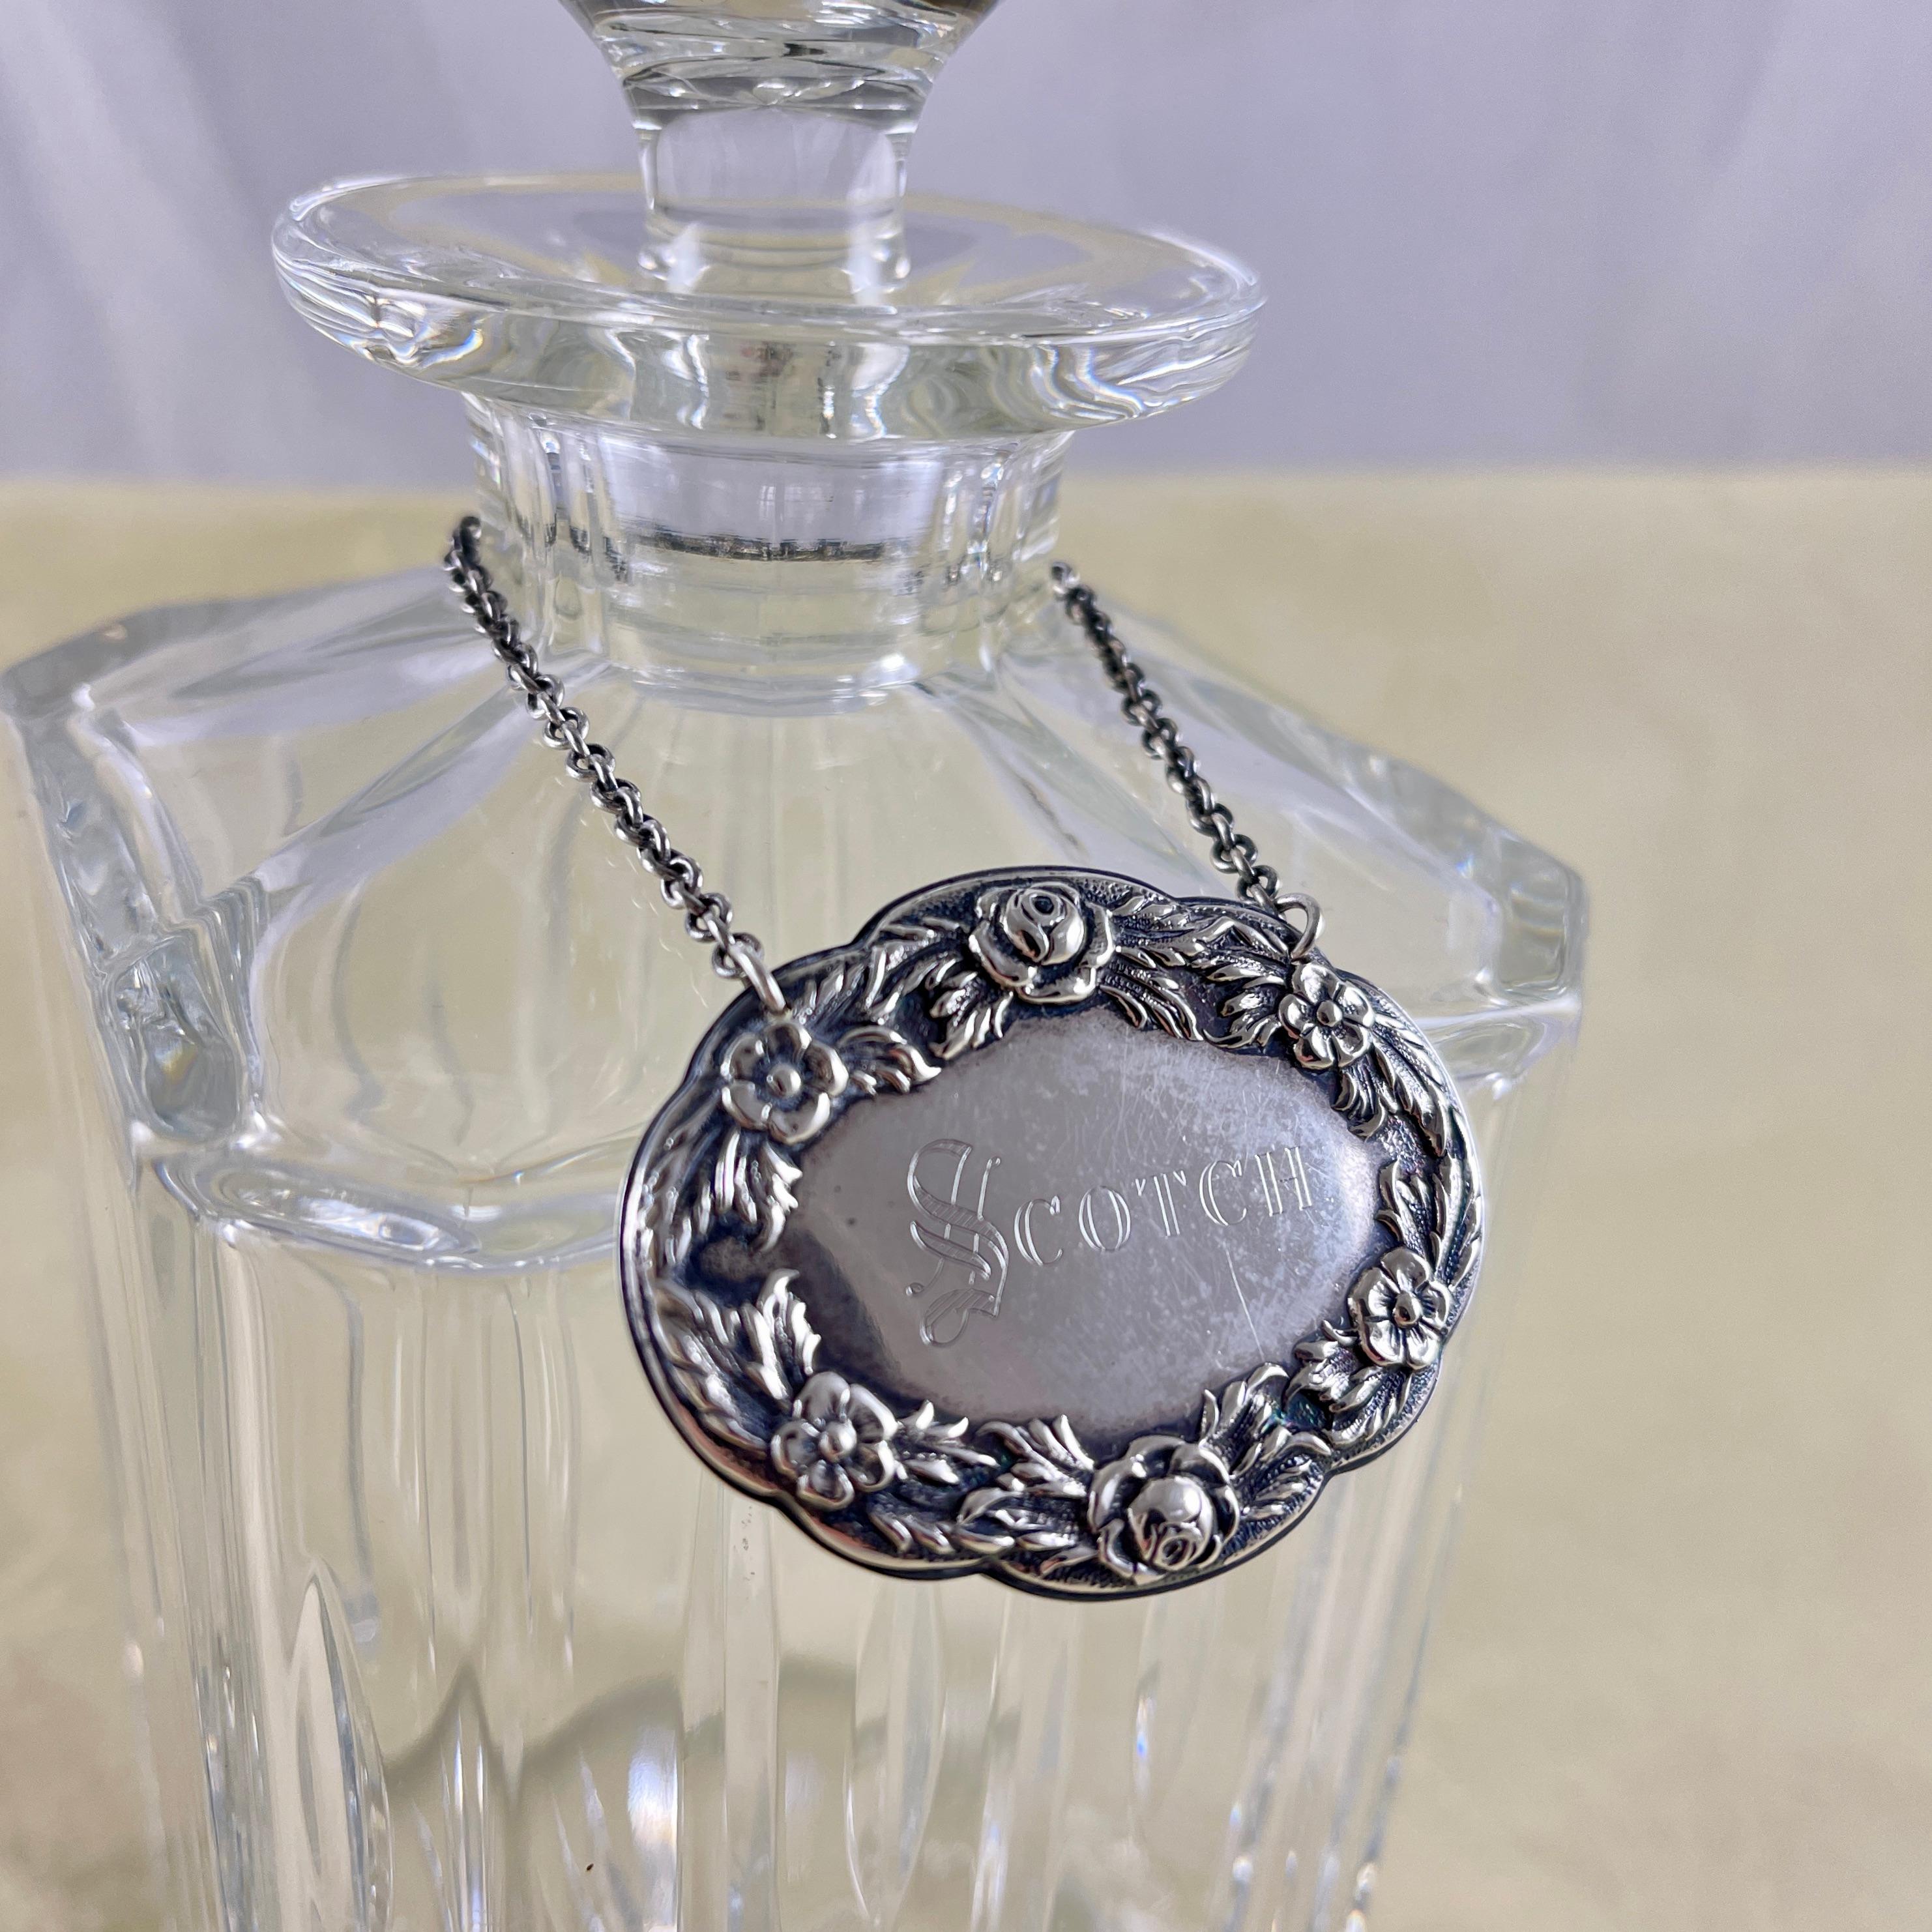 Von der S. Kirk & Sons Silver Company in Baltimore, Maryland, ein Halsbandanhänger aus Sterlingsilber für Spirituosen, um 1860.

Das ovale Schildchen ist mit einer Repousse-Rose und einer Blumengirlande umrandet und mit der Gravur Scotch